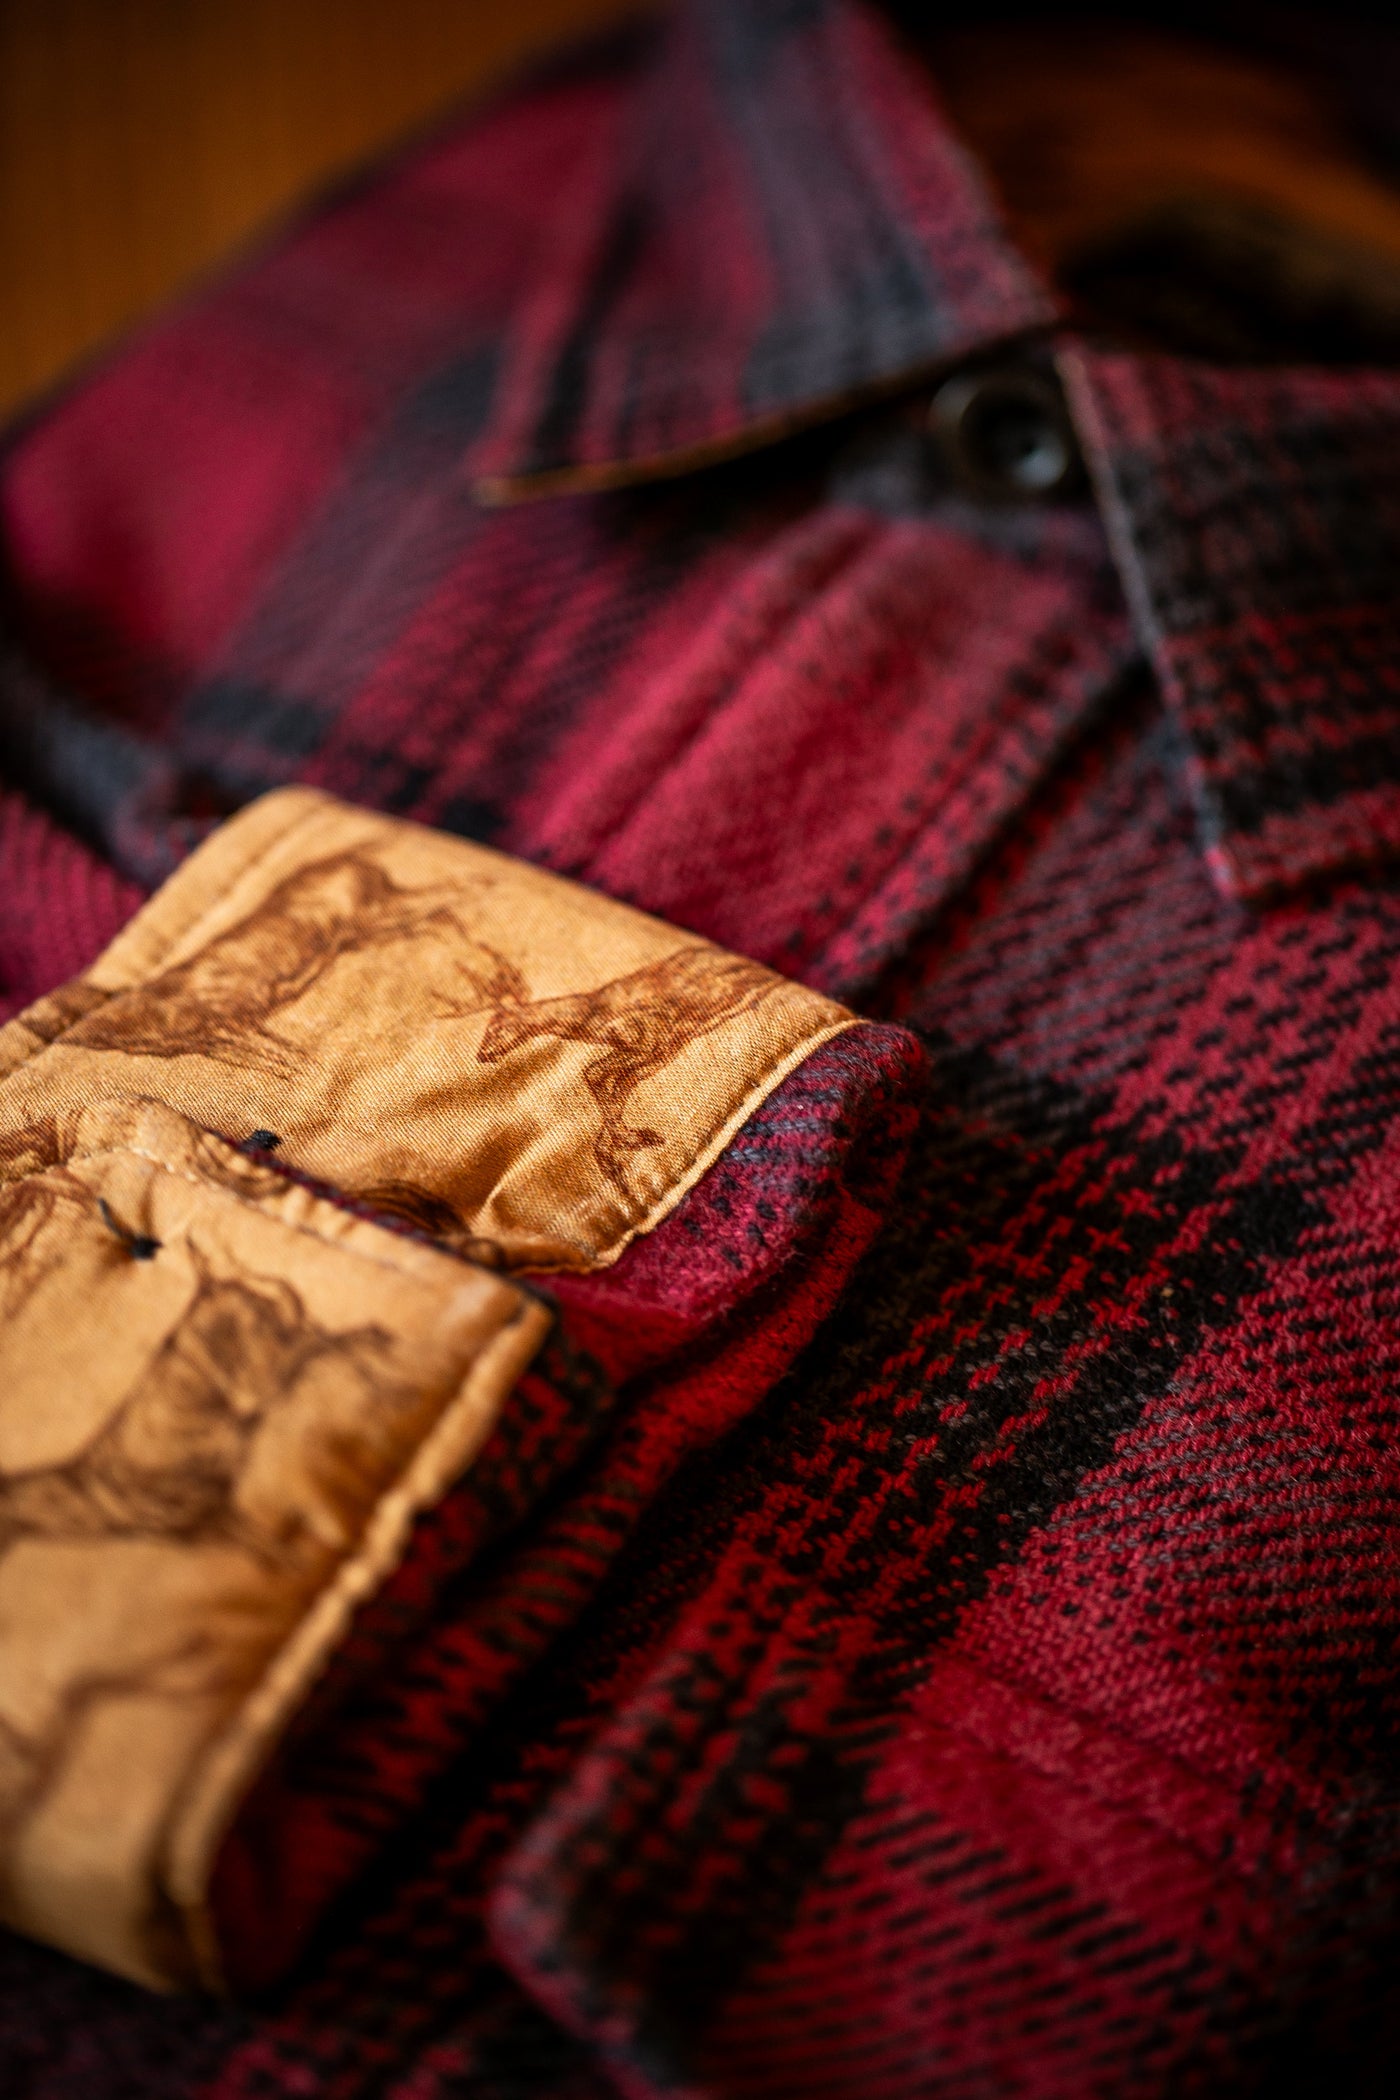 Men's Fireside Flannel - Deadwood Red